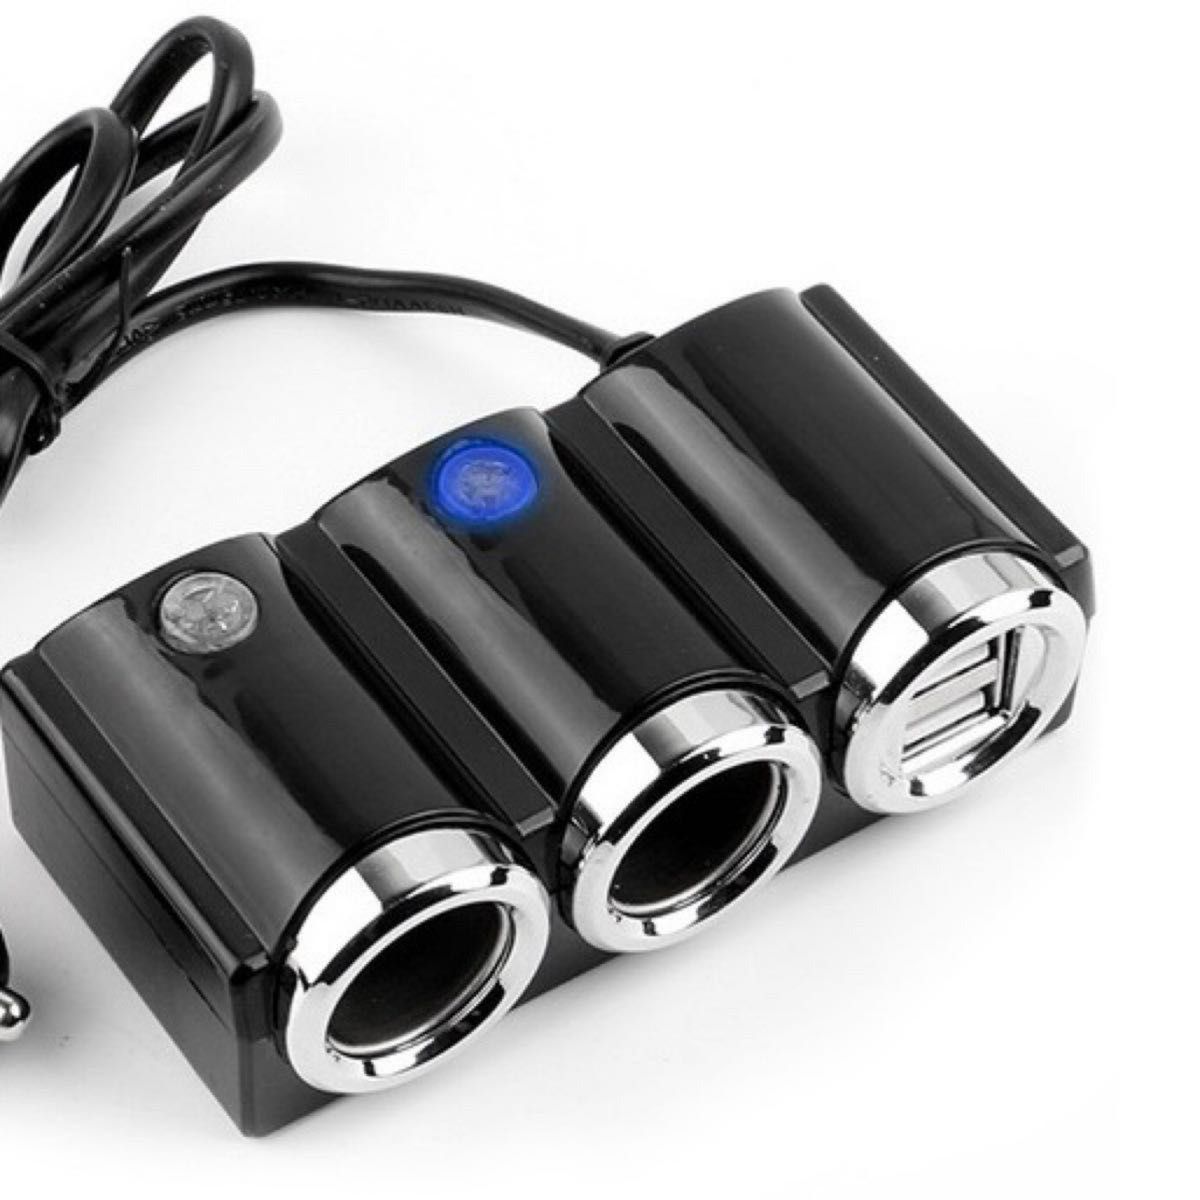 車載 充電器 シガーソケット ダブルUSBポート カーチャージャー 分配器 スマホ USB ソケット 2連_画像2